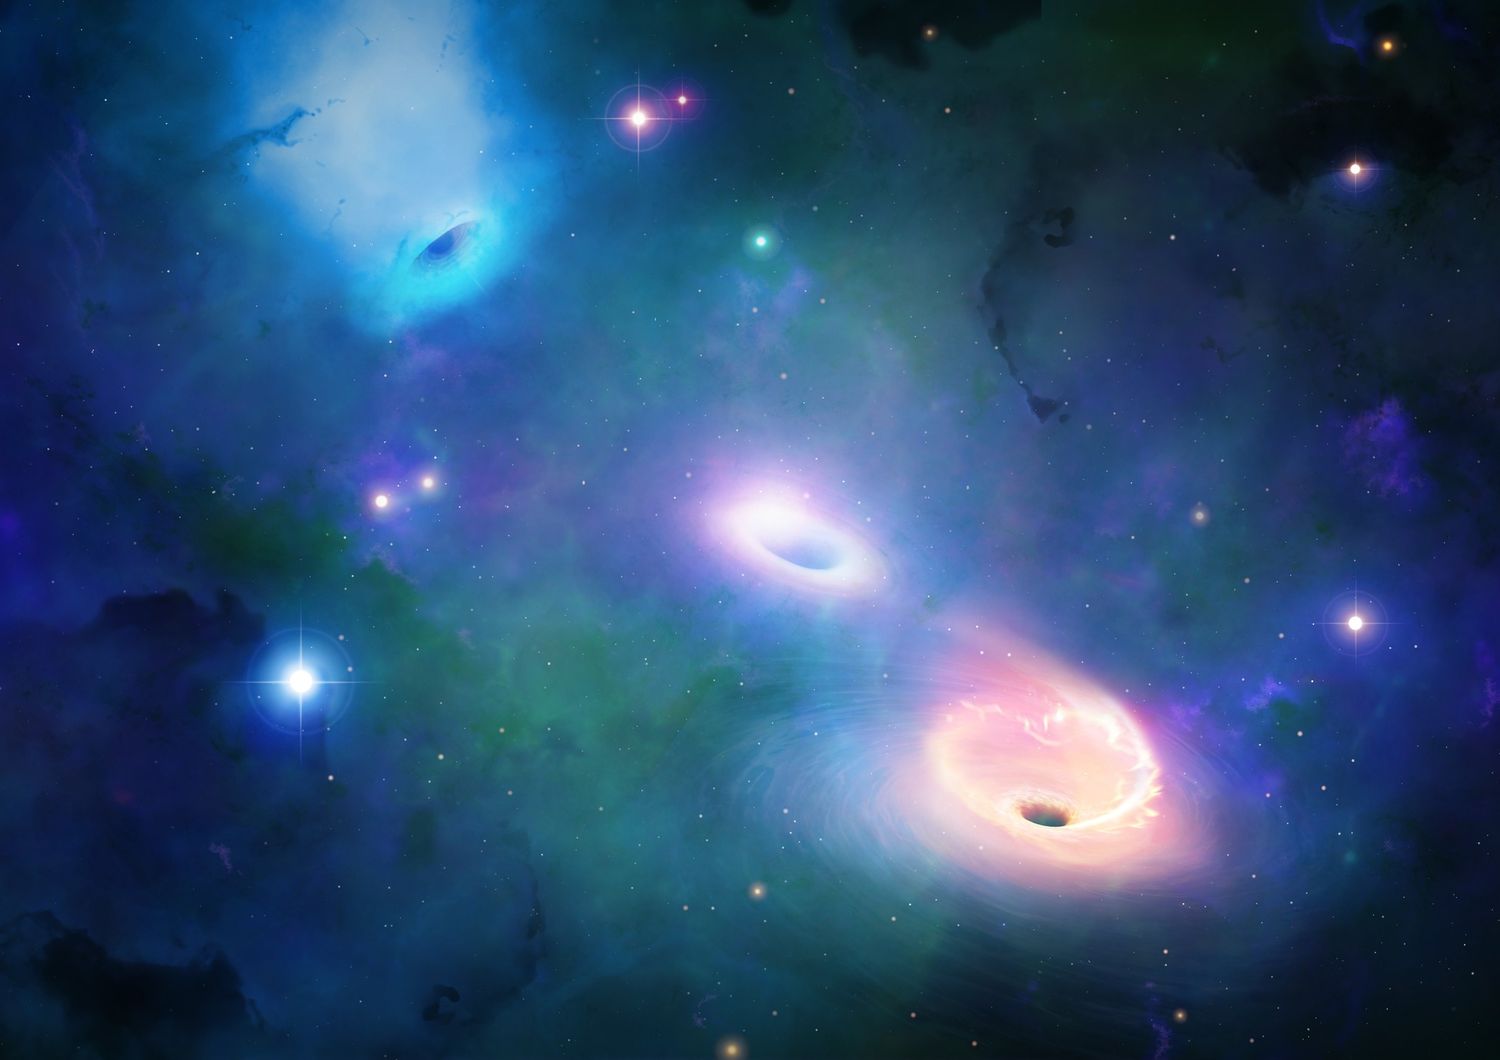 fusione buco nero onde gravitazionali